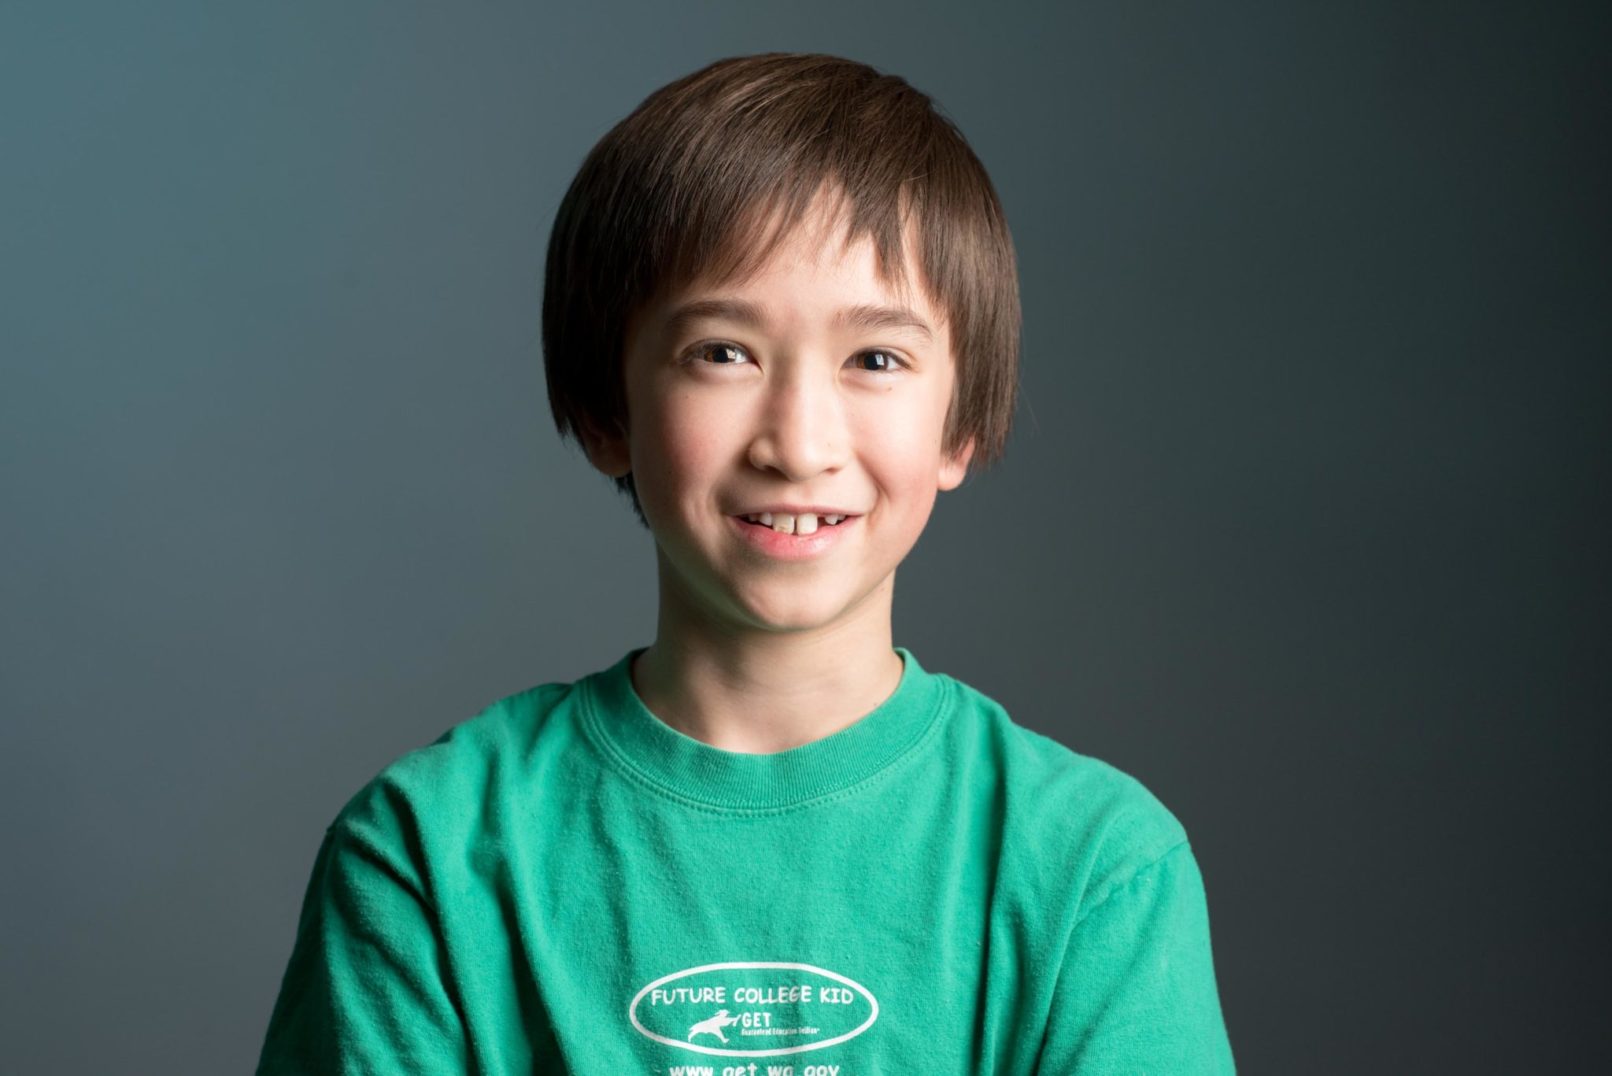 headshot portrait of a young boy wearing a green shirt.